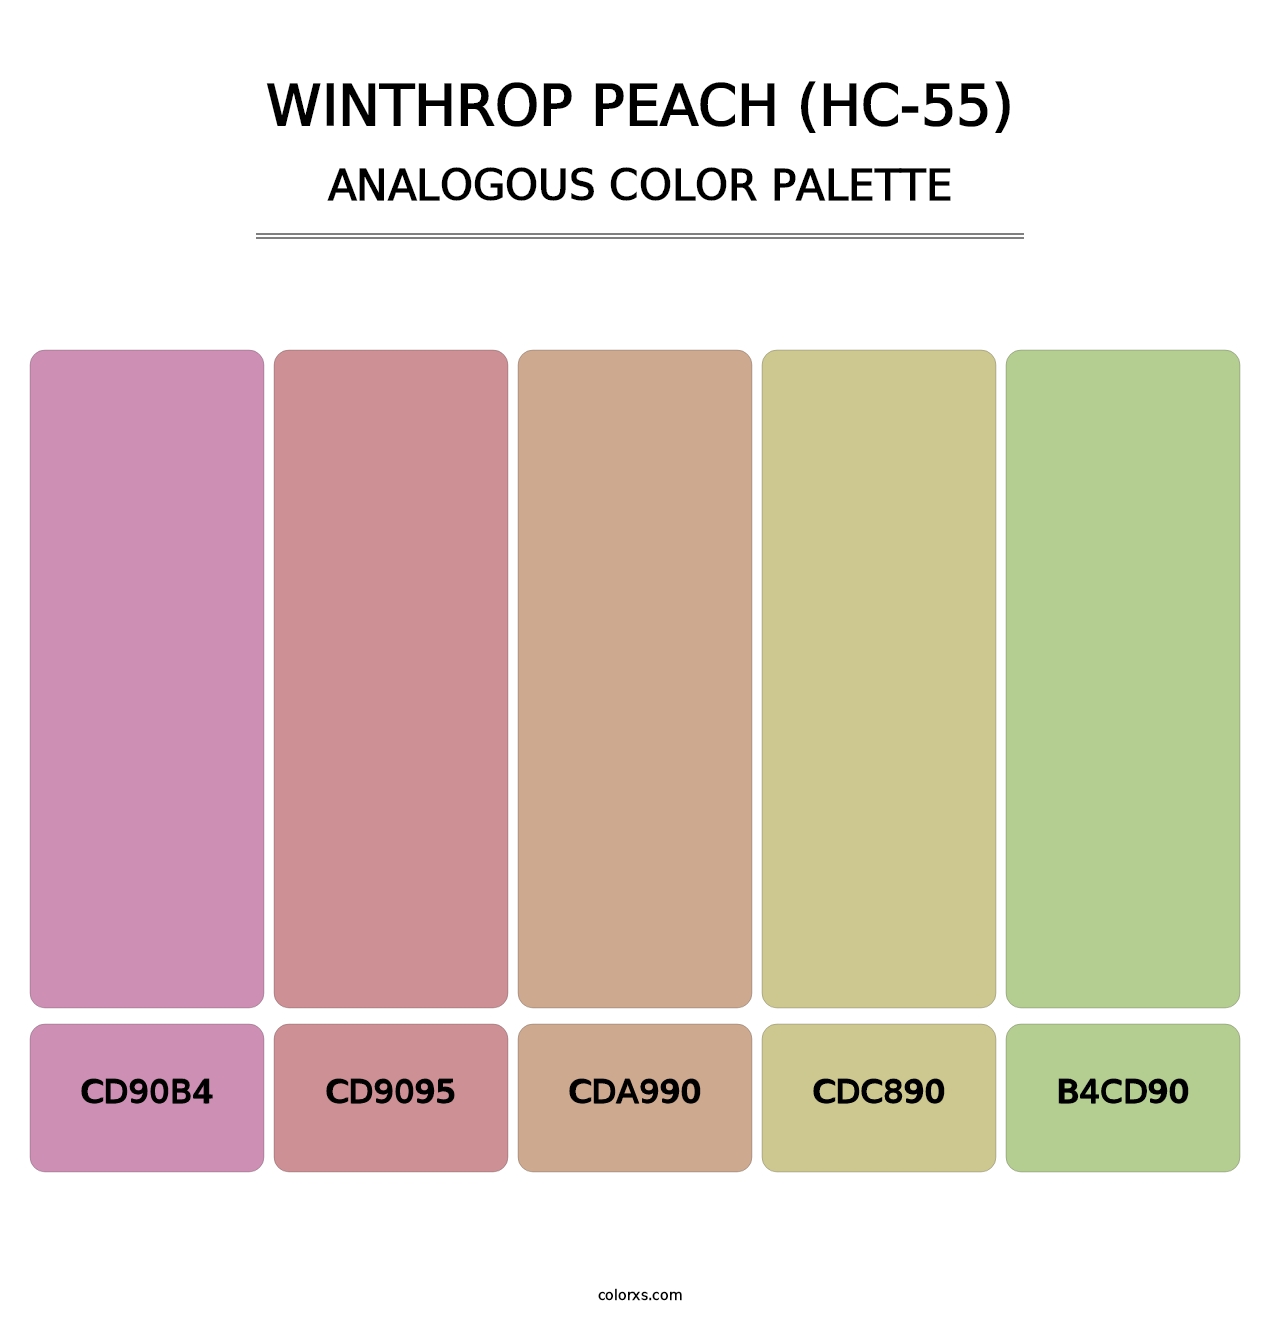 Winthrop Peach (HC-55) - Analogous Color Palette